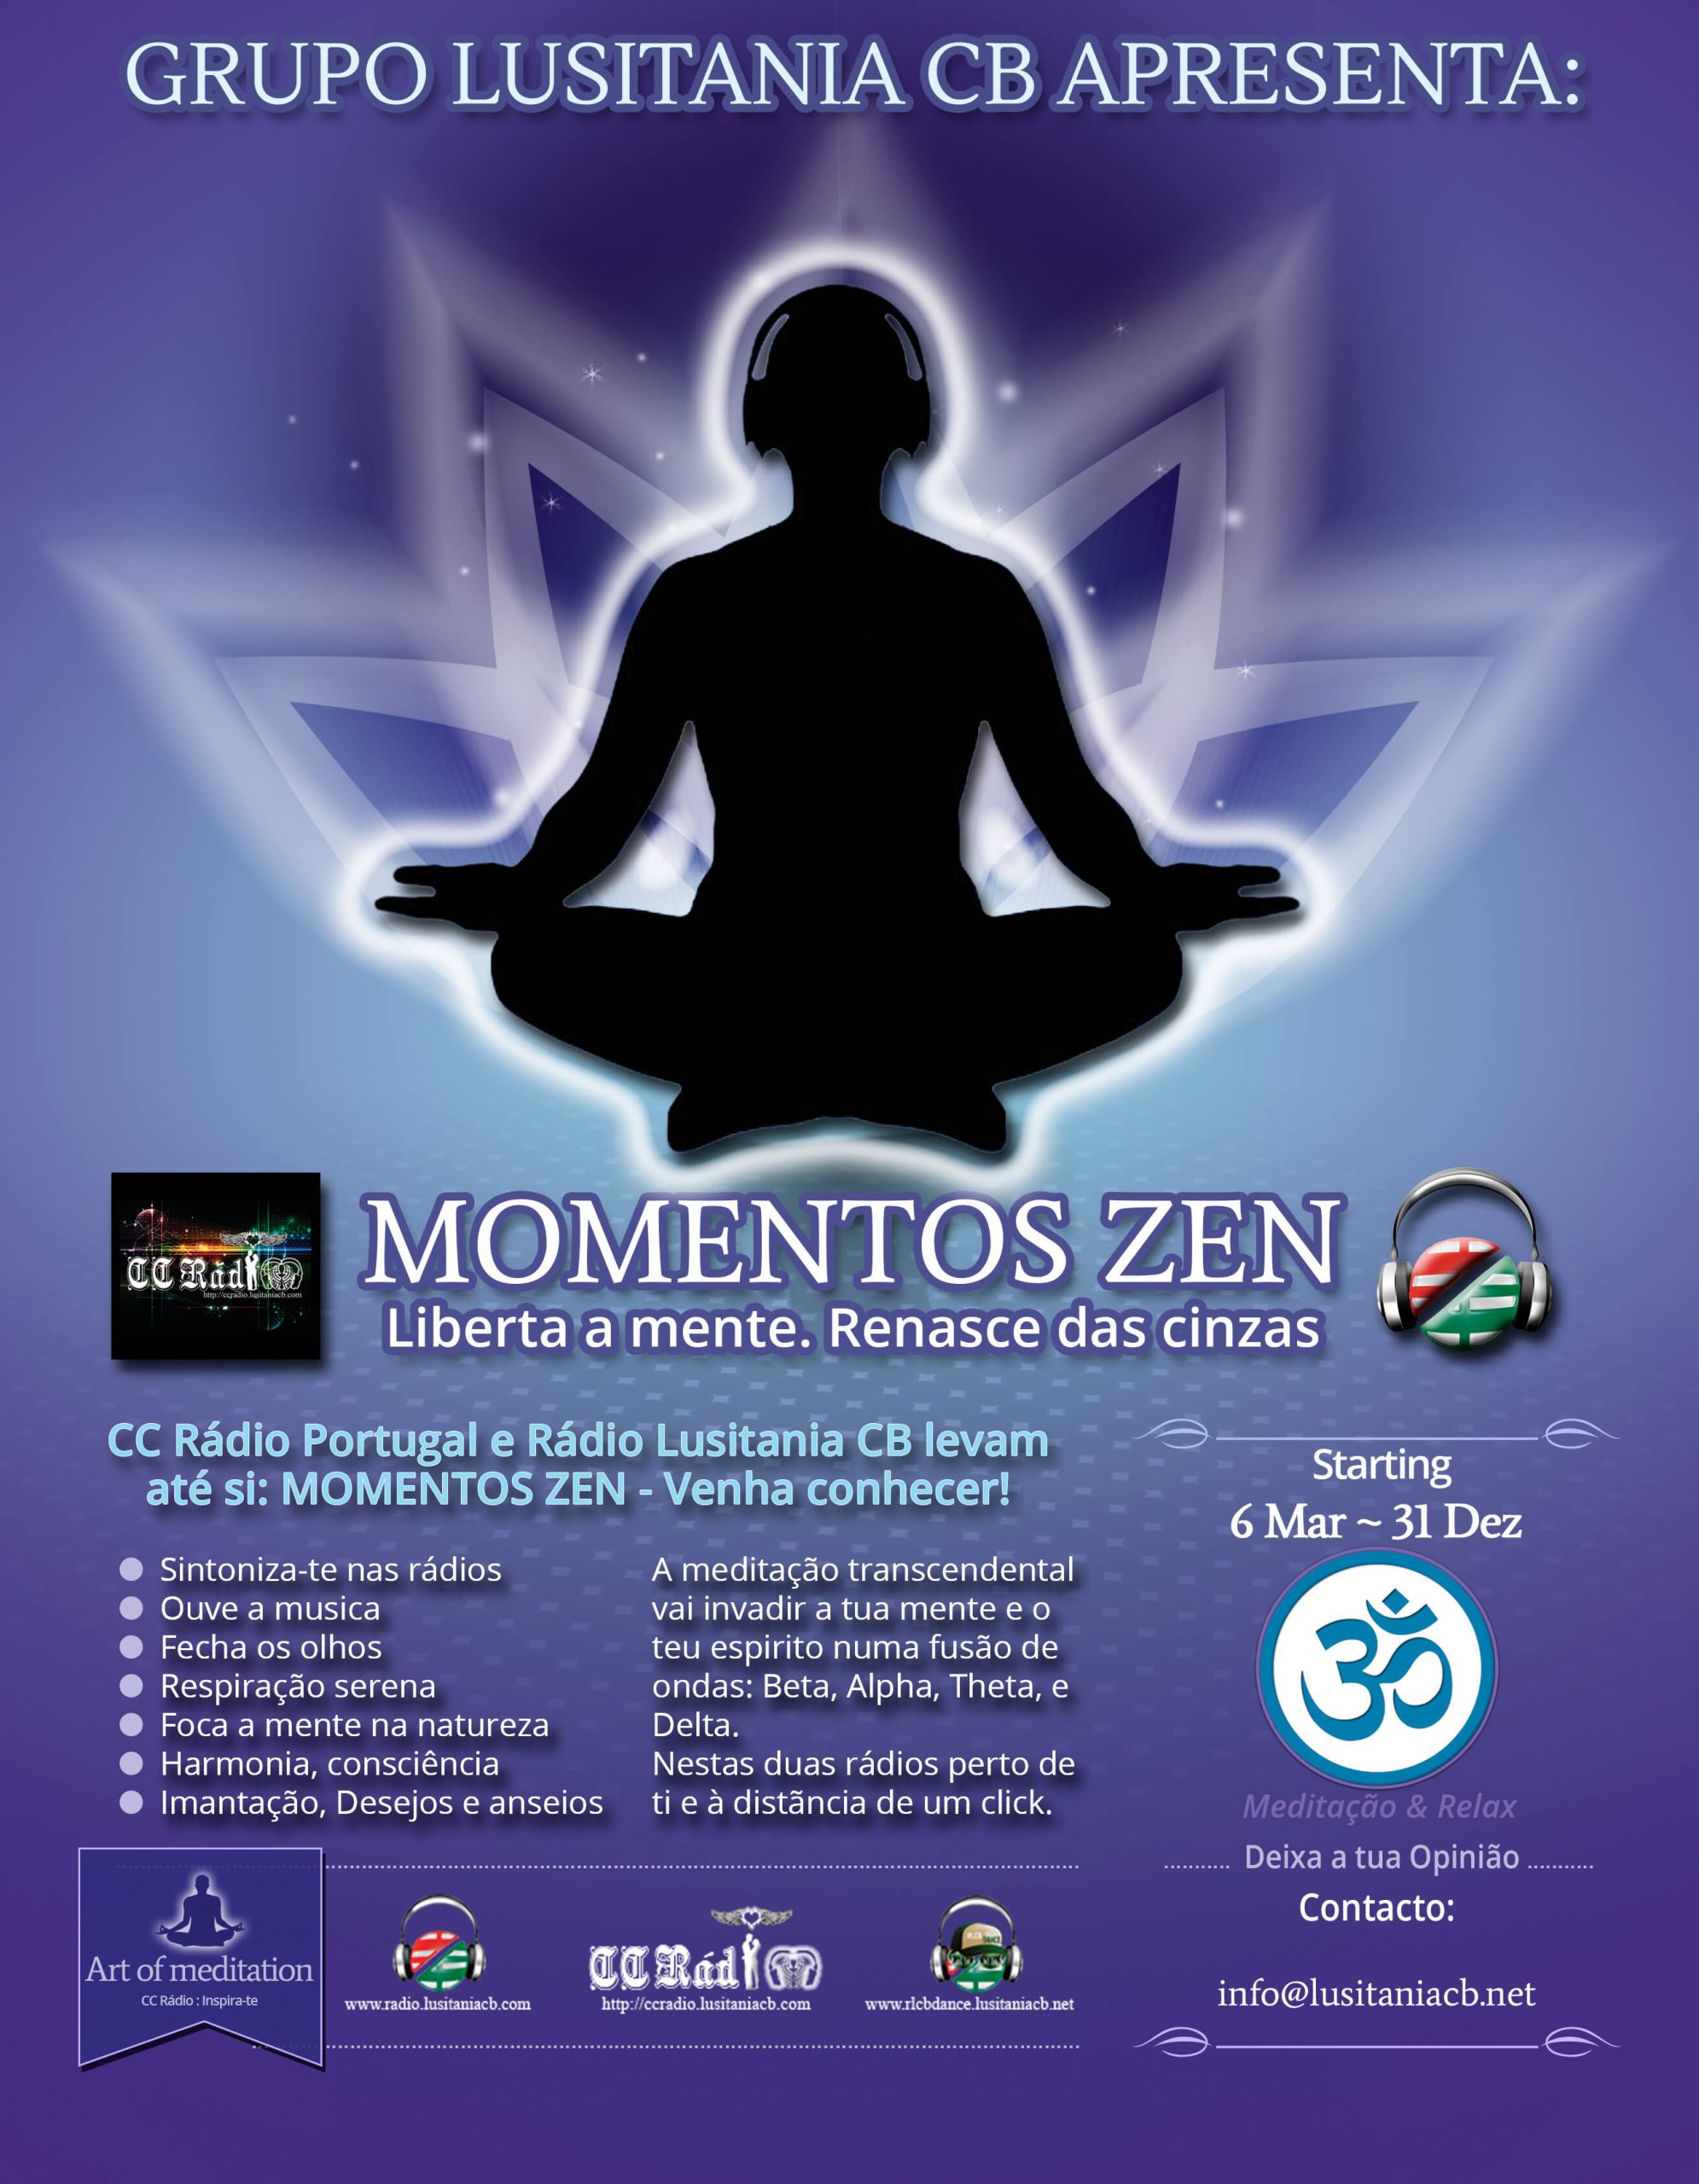 Momentos zen 2